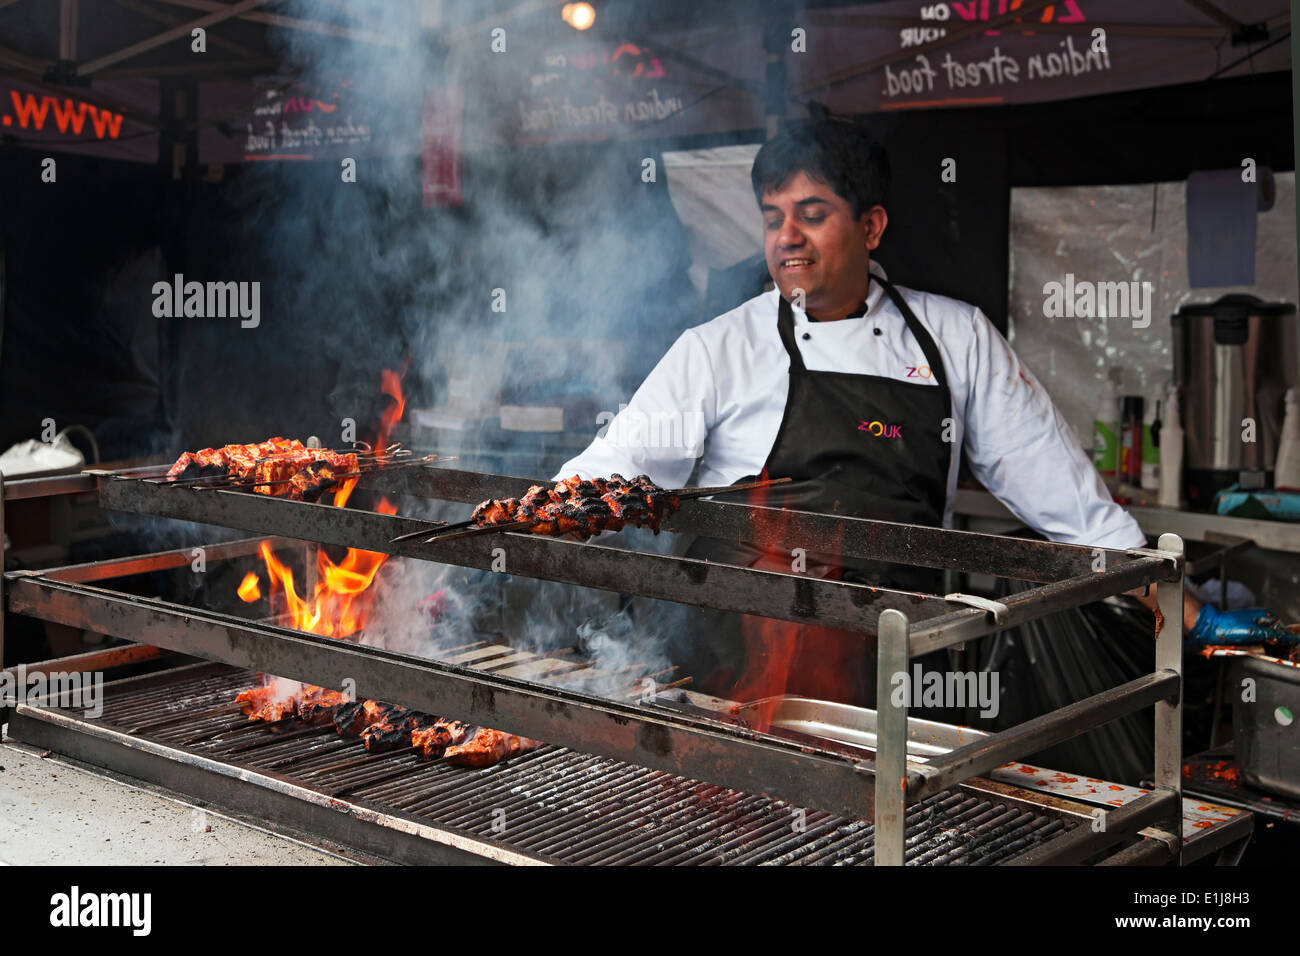 Mann Koch Kochen Fleisch auf einem Grill Flammen Indian Street Food Stand York North Yorkshire England UK Vereinigtes Königreich GB Großbritannien Stockfoto